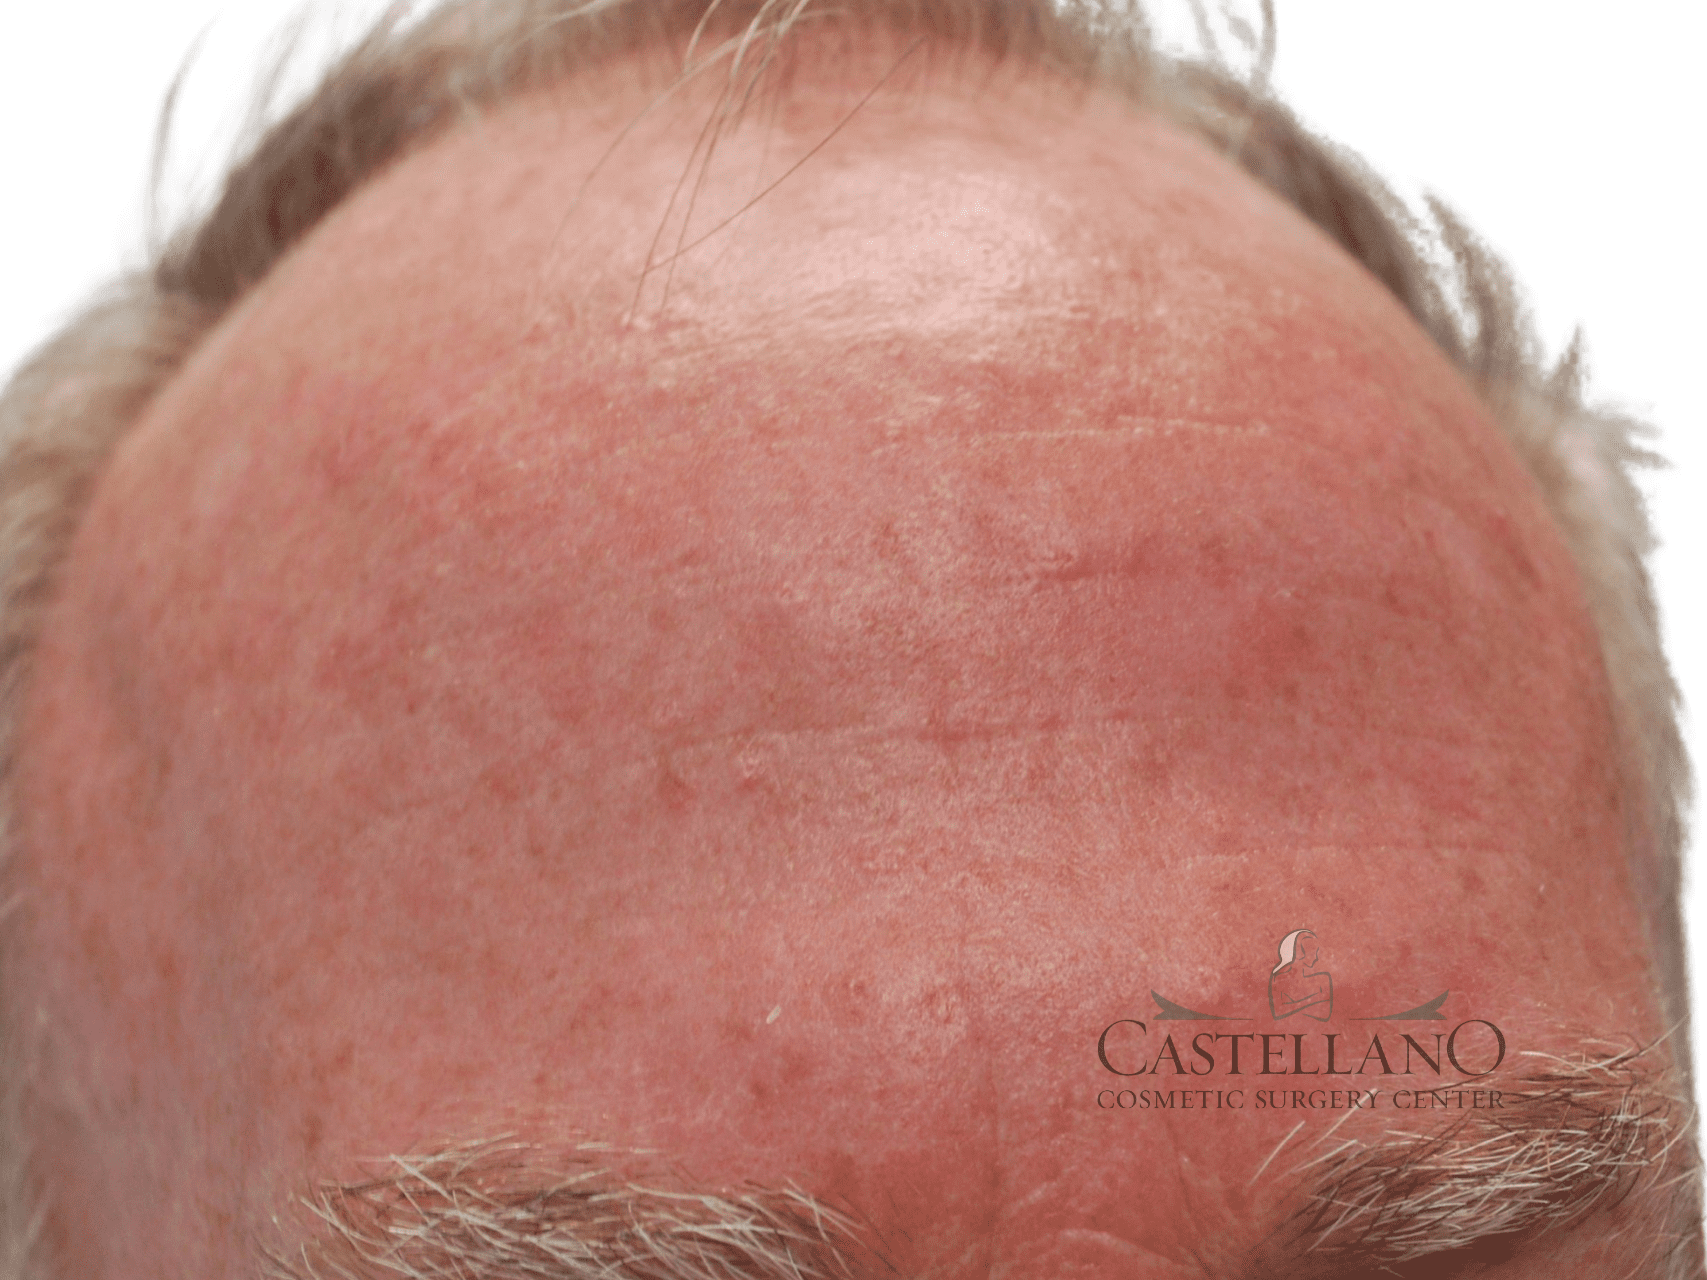 Laser Treatments Patient Photo - Case 16747 - after view